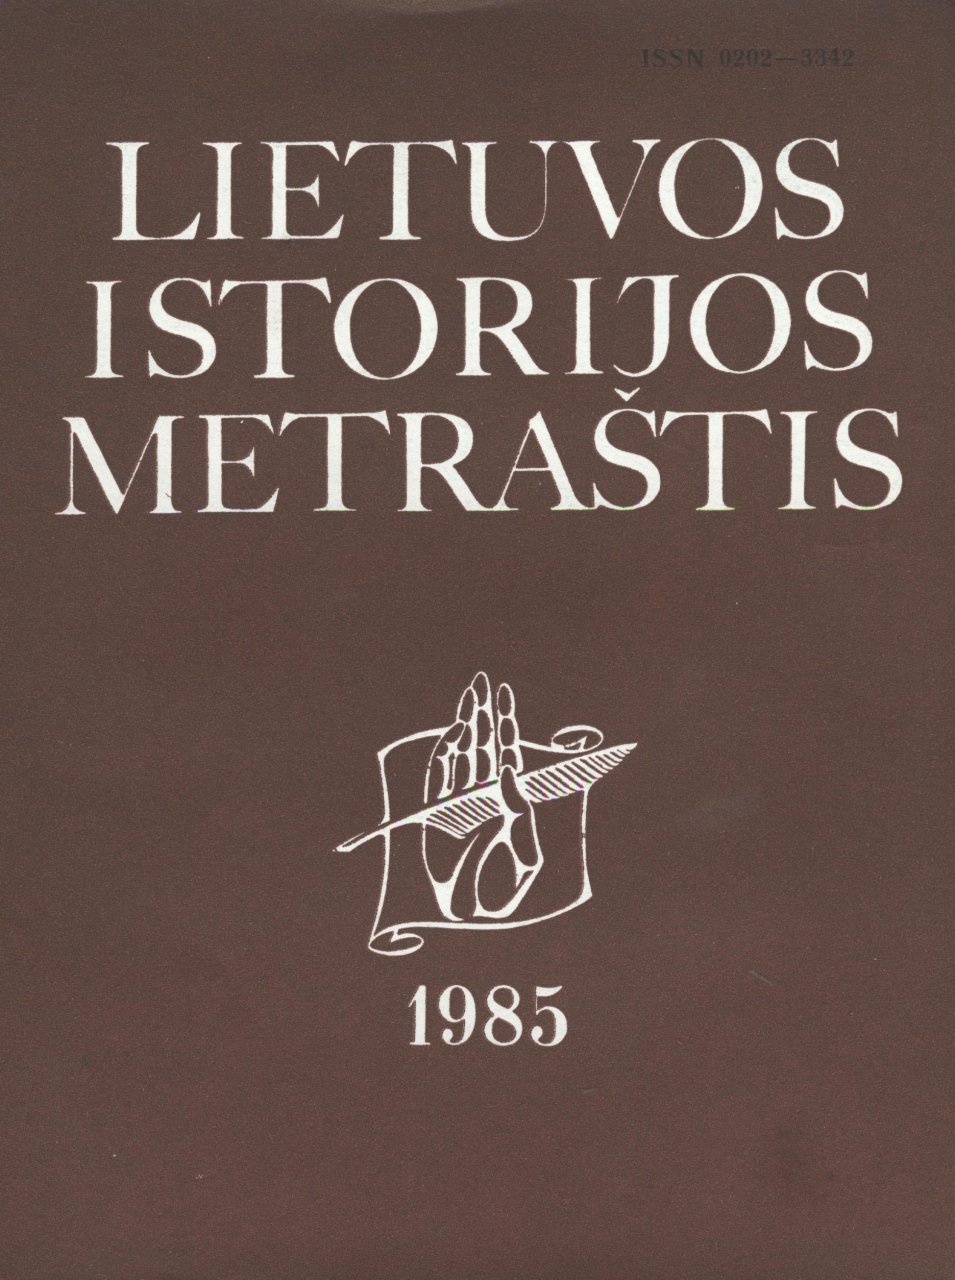 Lietuvos istorijos metraštis 1985 metai 